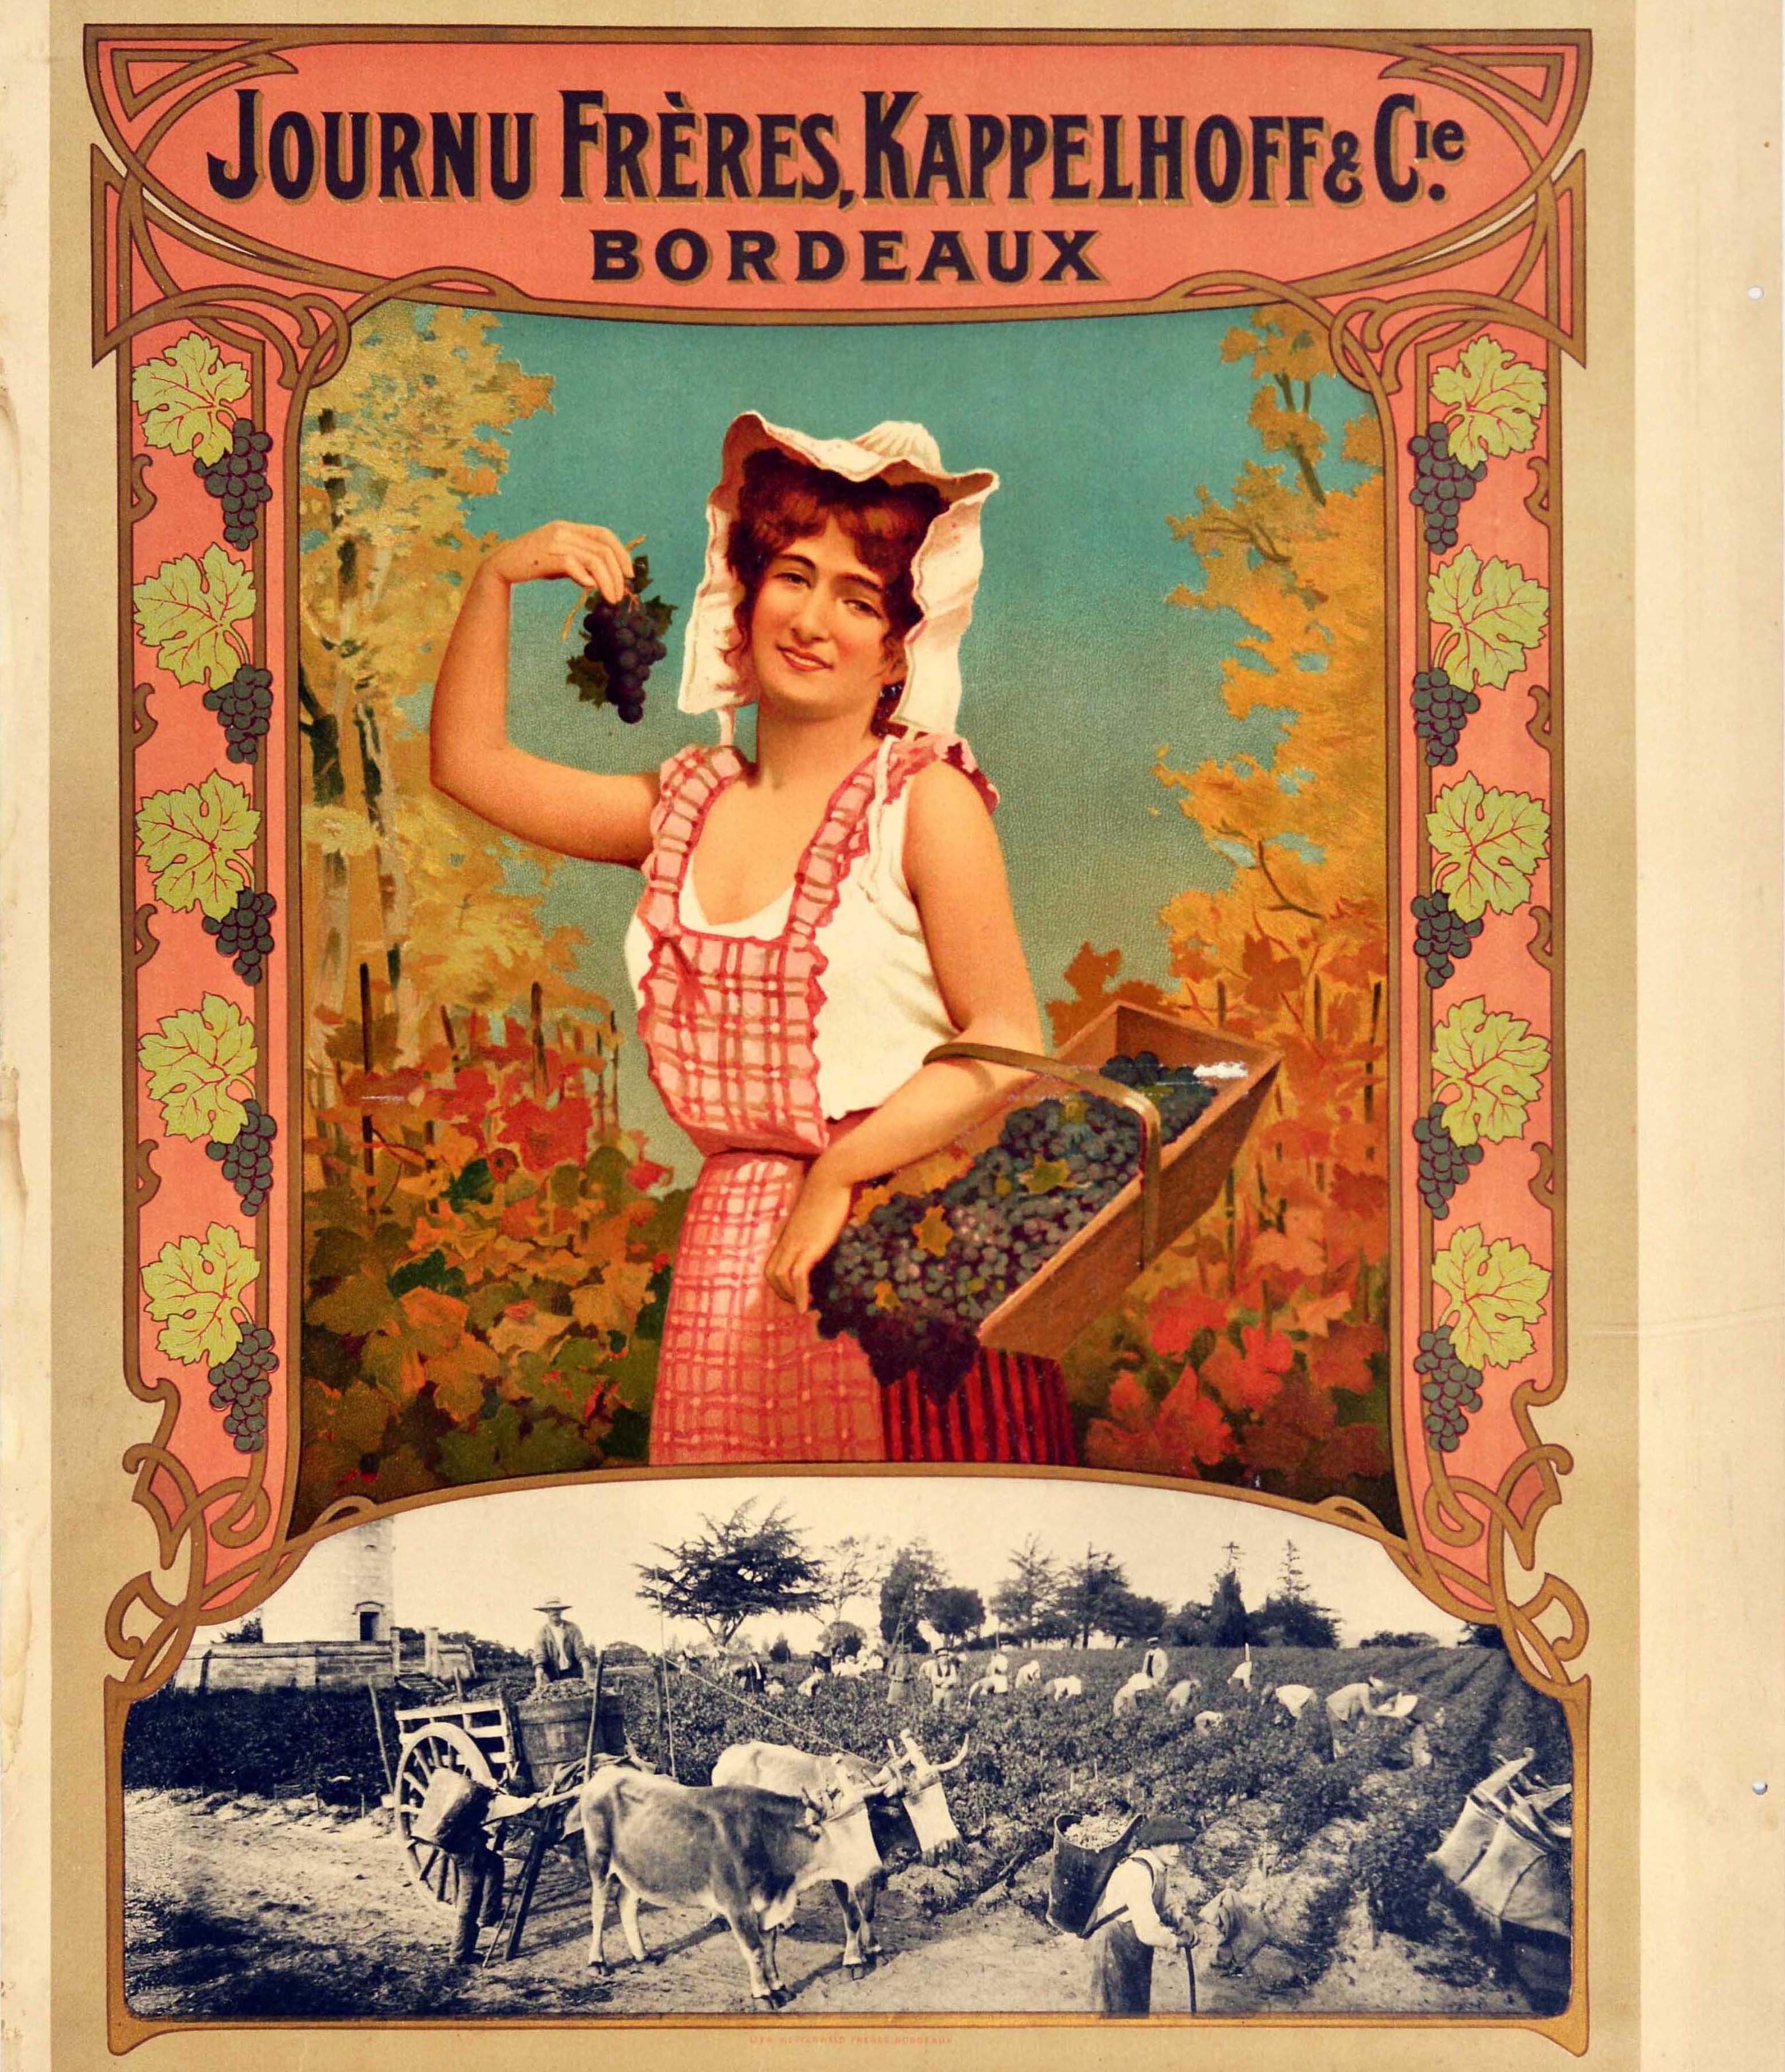 Originales antikes Getränke-Werbeplakat für Journu Freres, Kappelhoff & Cie. Bordeaux-Wein mit dem farbenfrohen Bild einer lächelnden Traubenpflückerin, die dem Betrachter einen Korb mit Trauben und eine Traube in der Hand zeigt, darunter ein